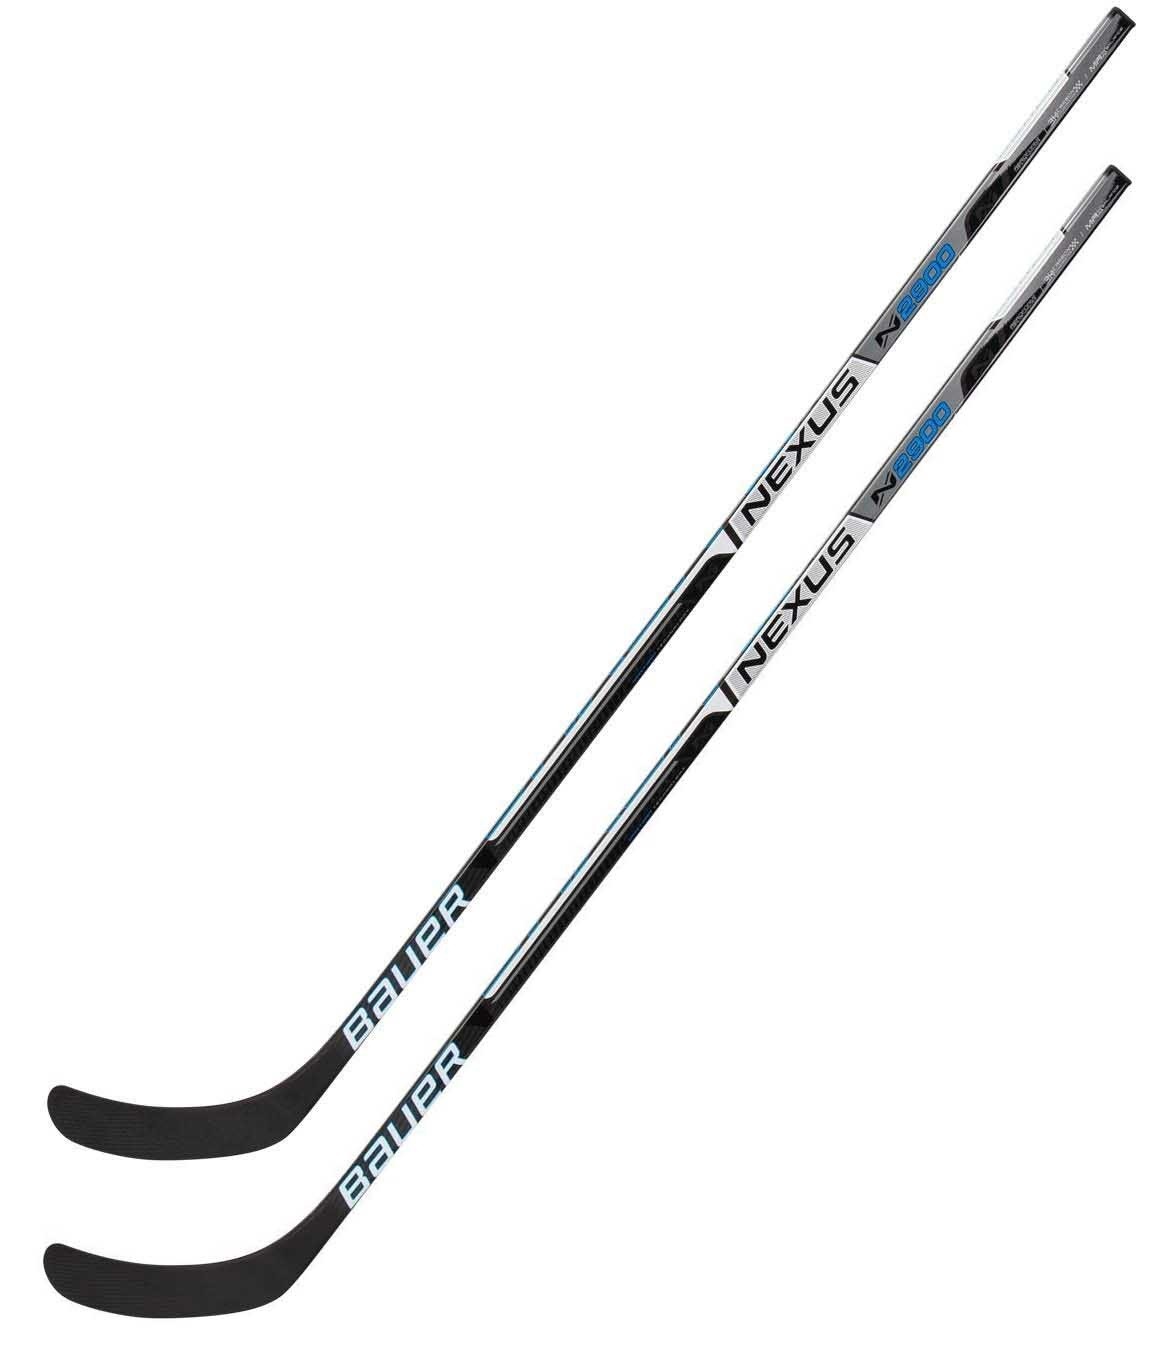 2 Pack BAUER Nexus N2900 Ice Hockey Sticks Senior Flex